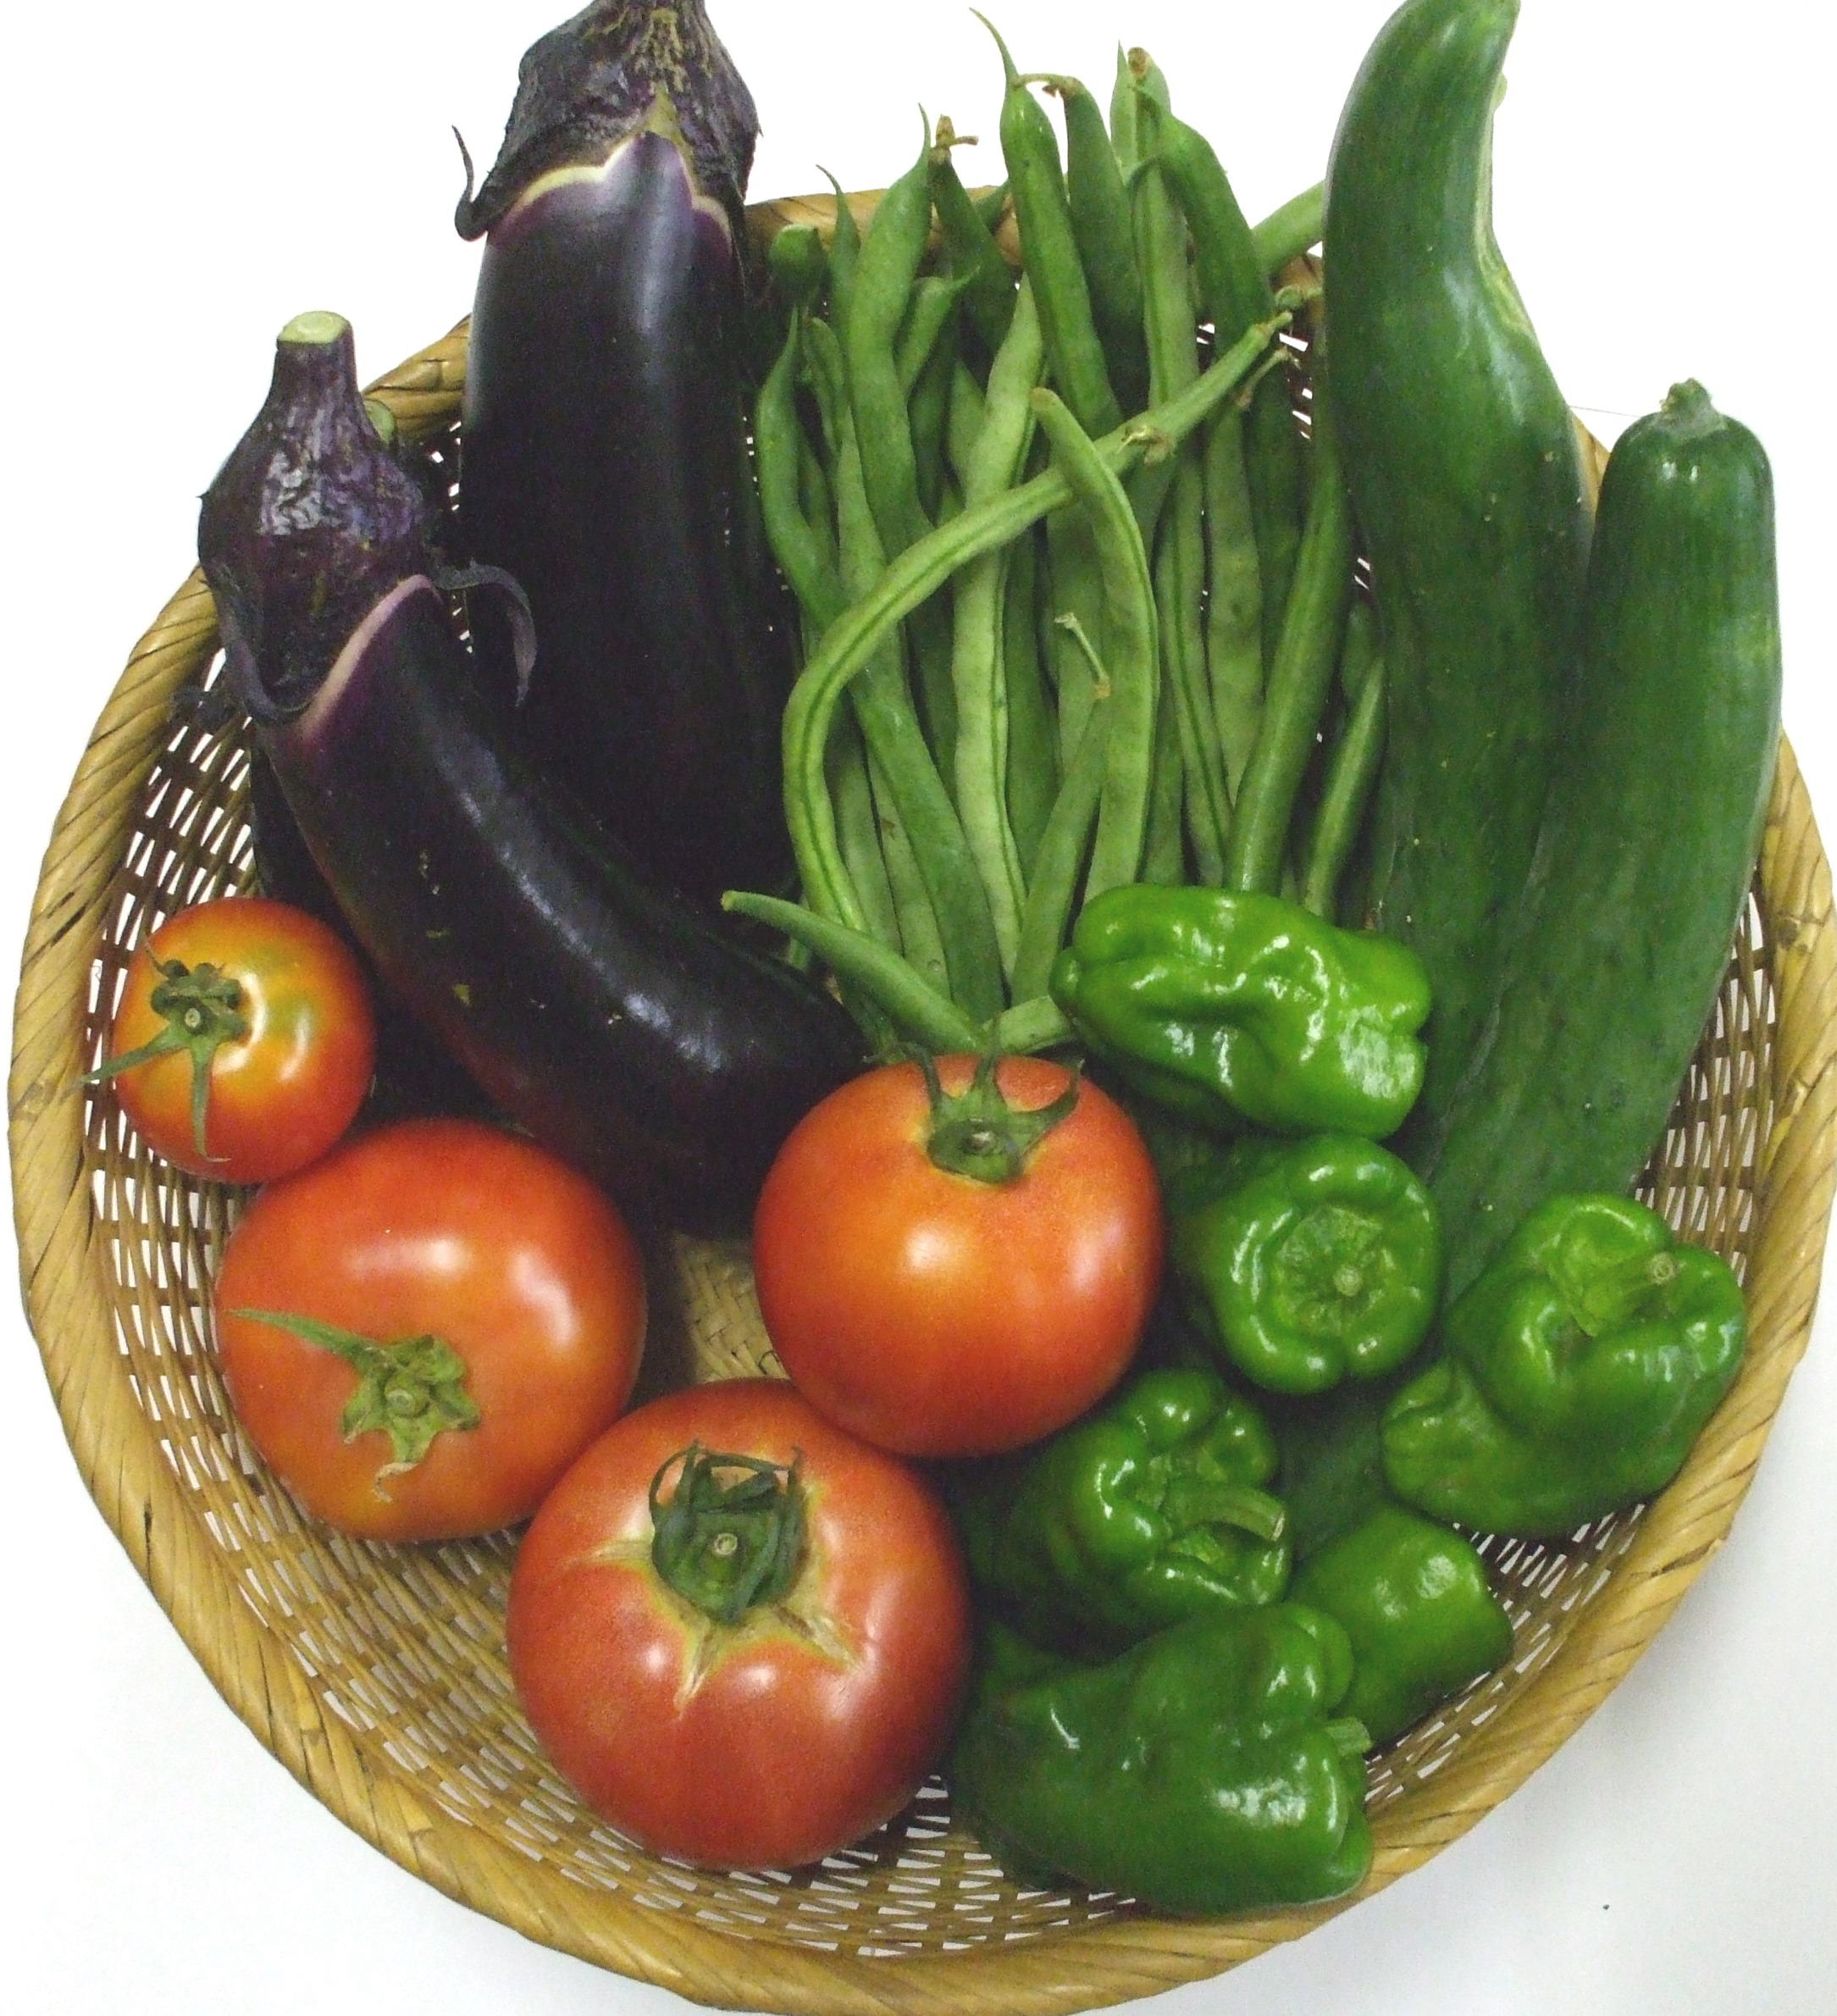 地元の旬の野菜セット例 なす、いんげん、きゅうり、ピーマン、トマト